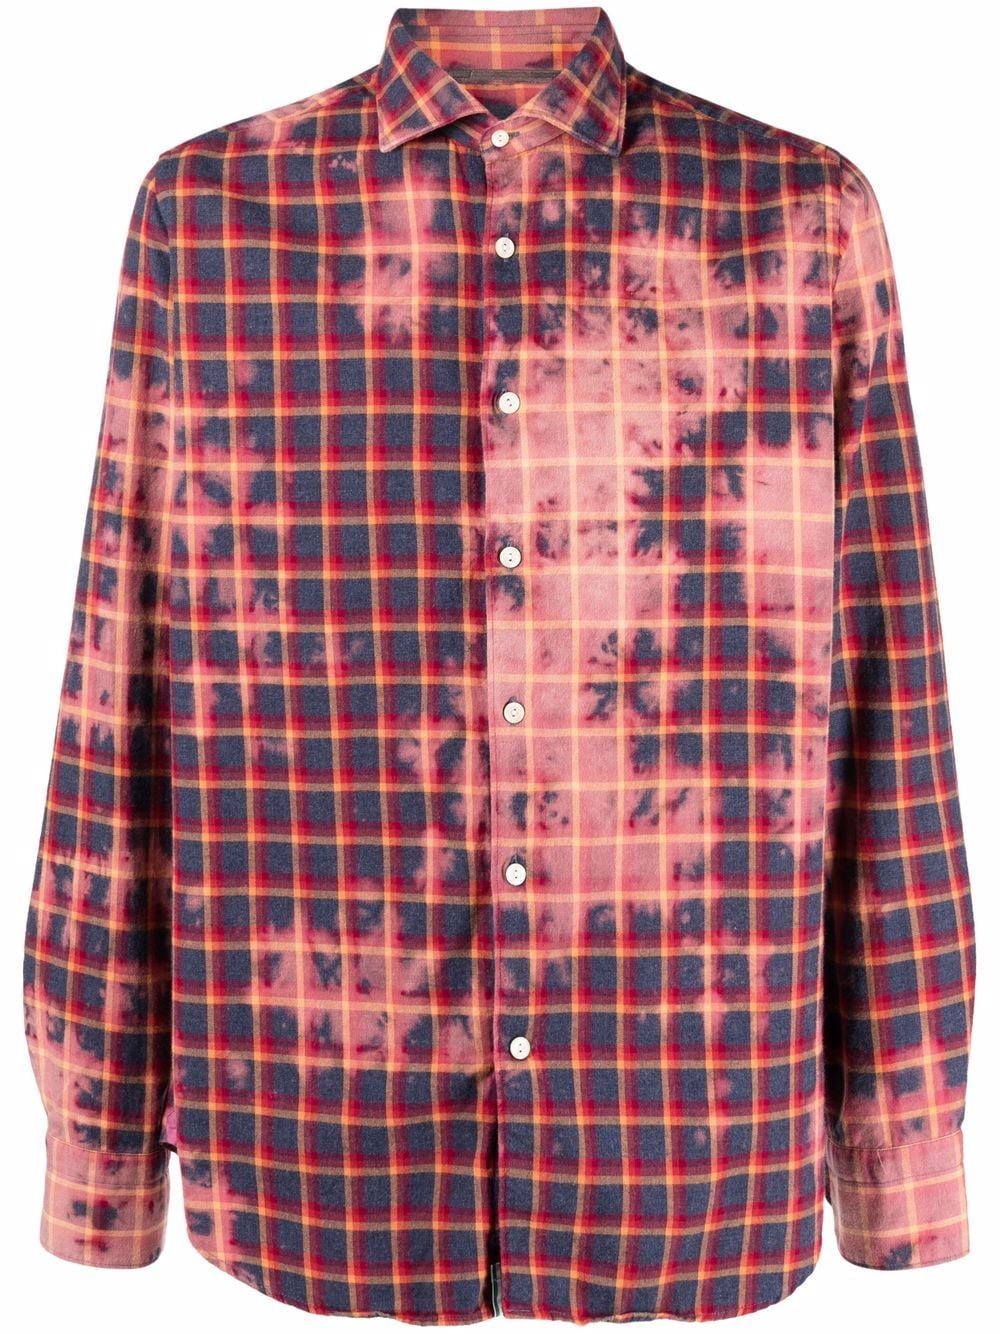 TINTORIA MATTEI Camicia in cotone madras rosso tie-dye con stampa check